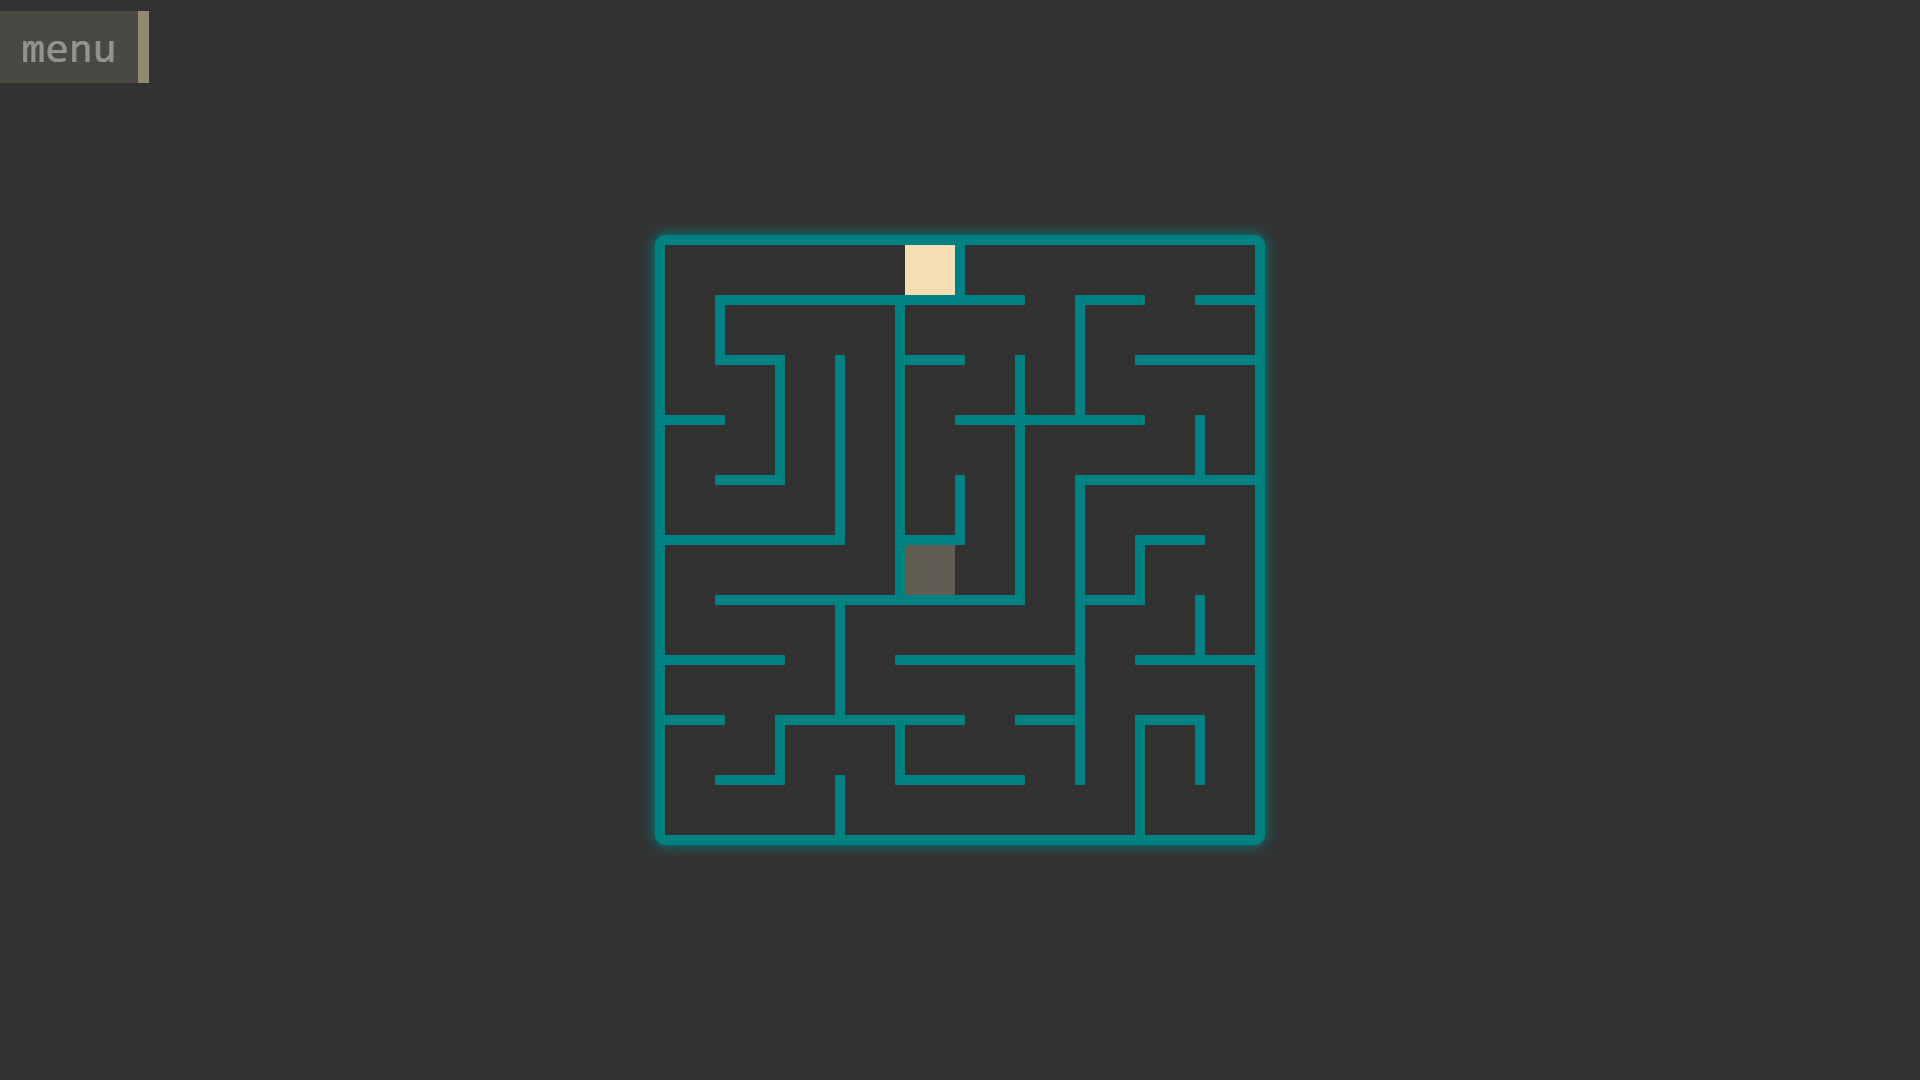 Тайна темного лабиринта 2. 2д Лабиринт для игры. Labyrinth 2 лабиринтные игры. Лабиринт фон. Меню игры Лабиринт.